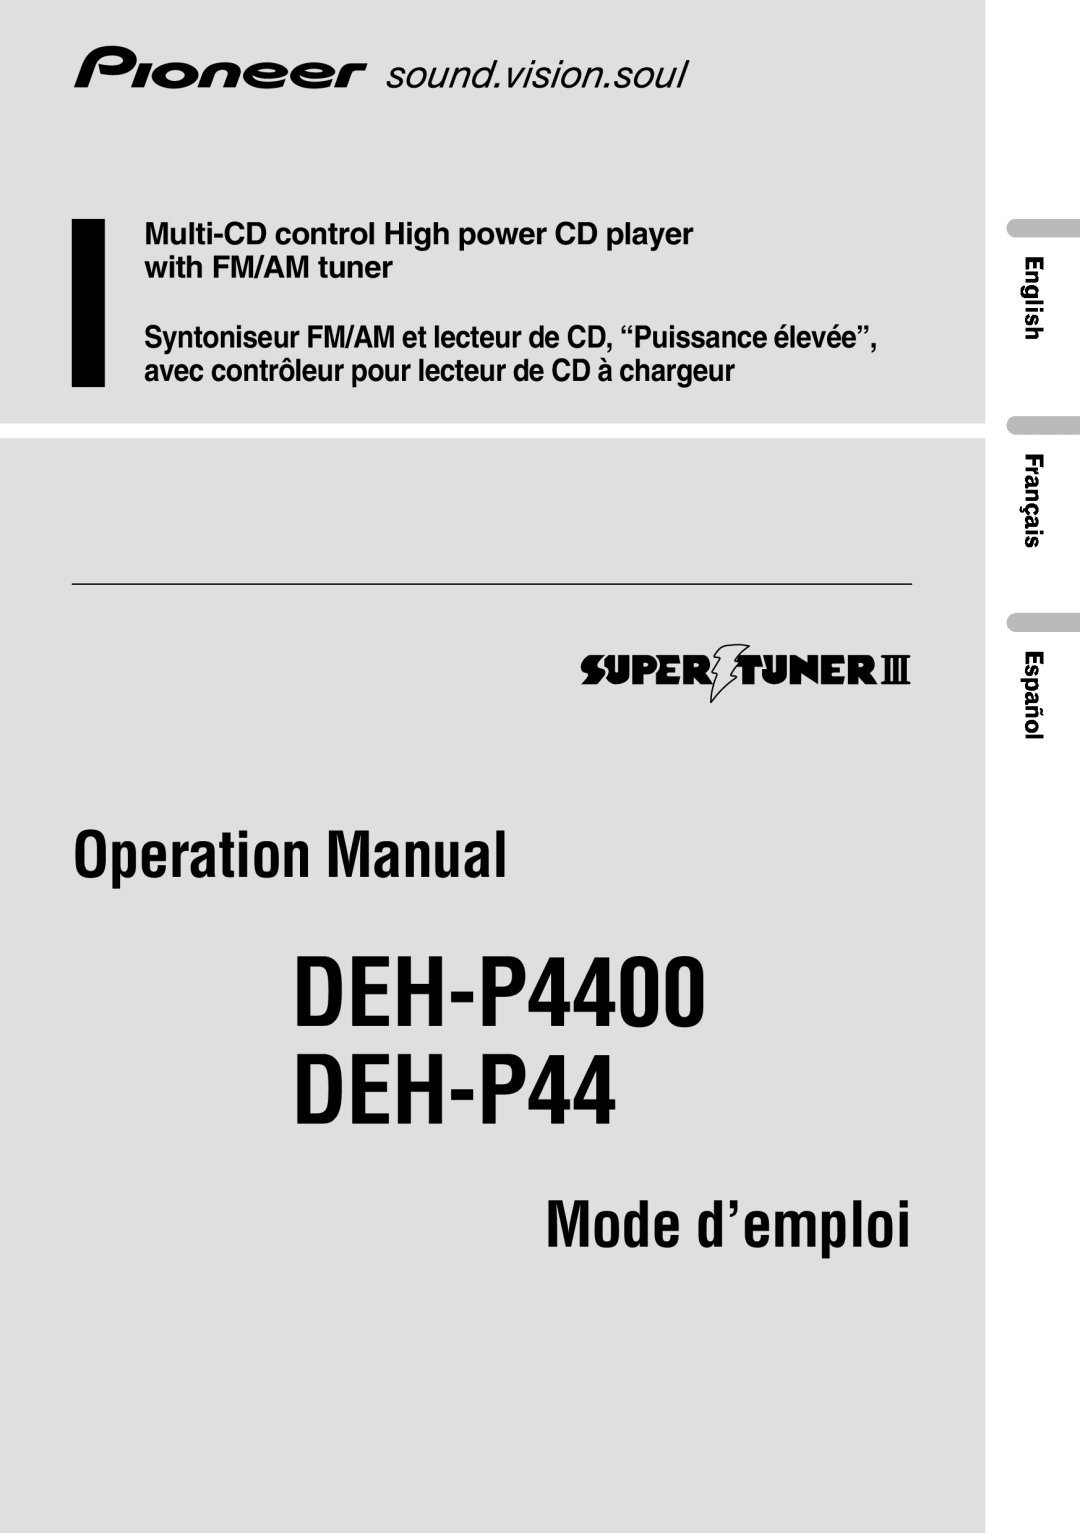 Pioneer operation manual English Français Español, Français Italiano Nederlands, DEH-P4400 DEH-P44, Operation Manual 